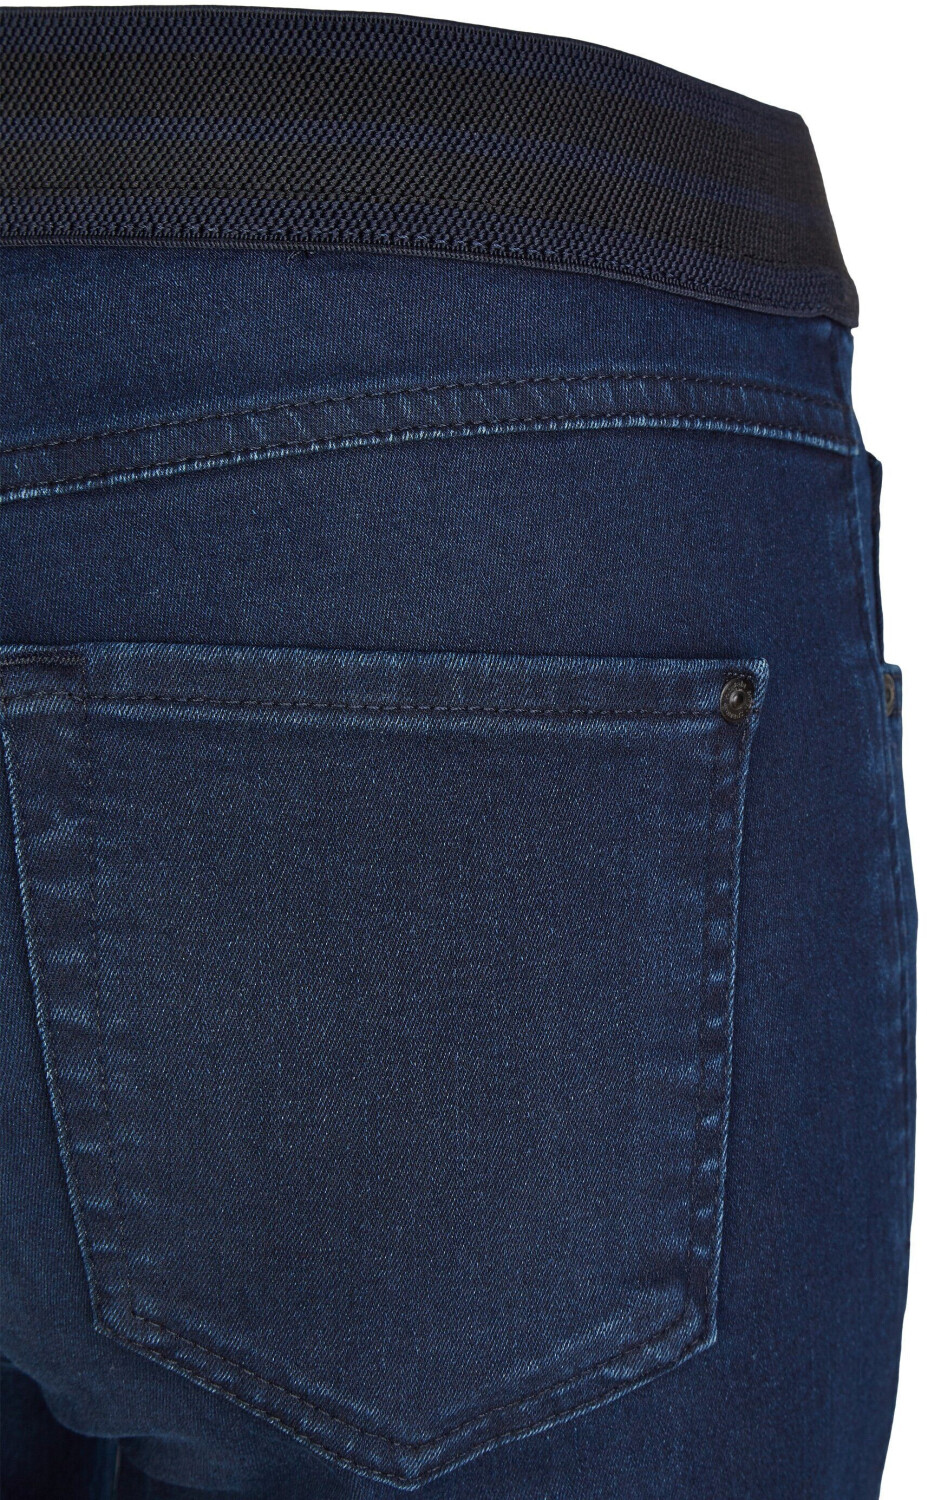 Angels Jeans One Size Fits € 82,32 All Preisvergleich ab indigo used | dark bei